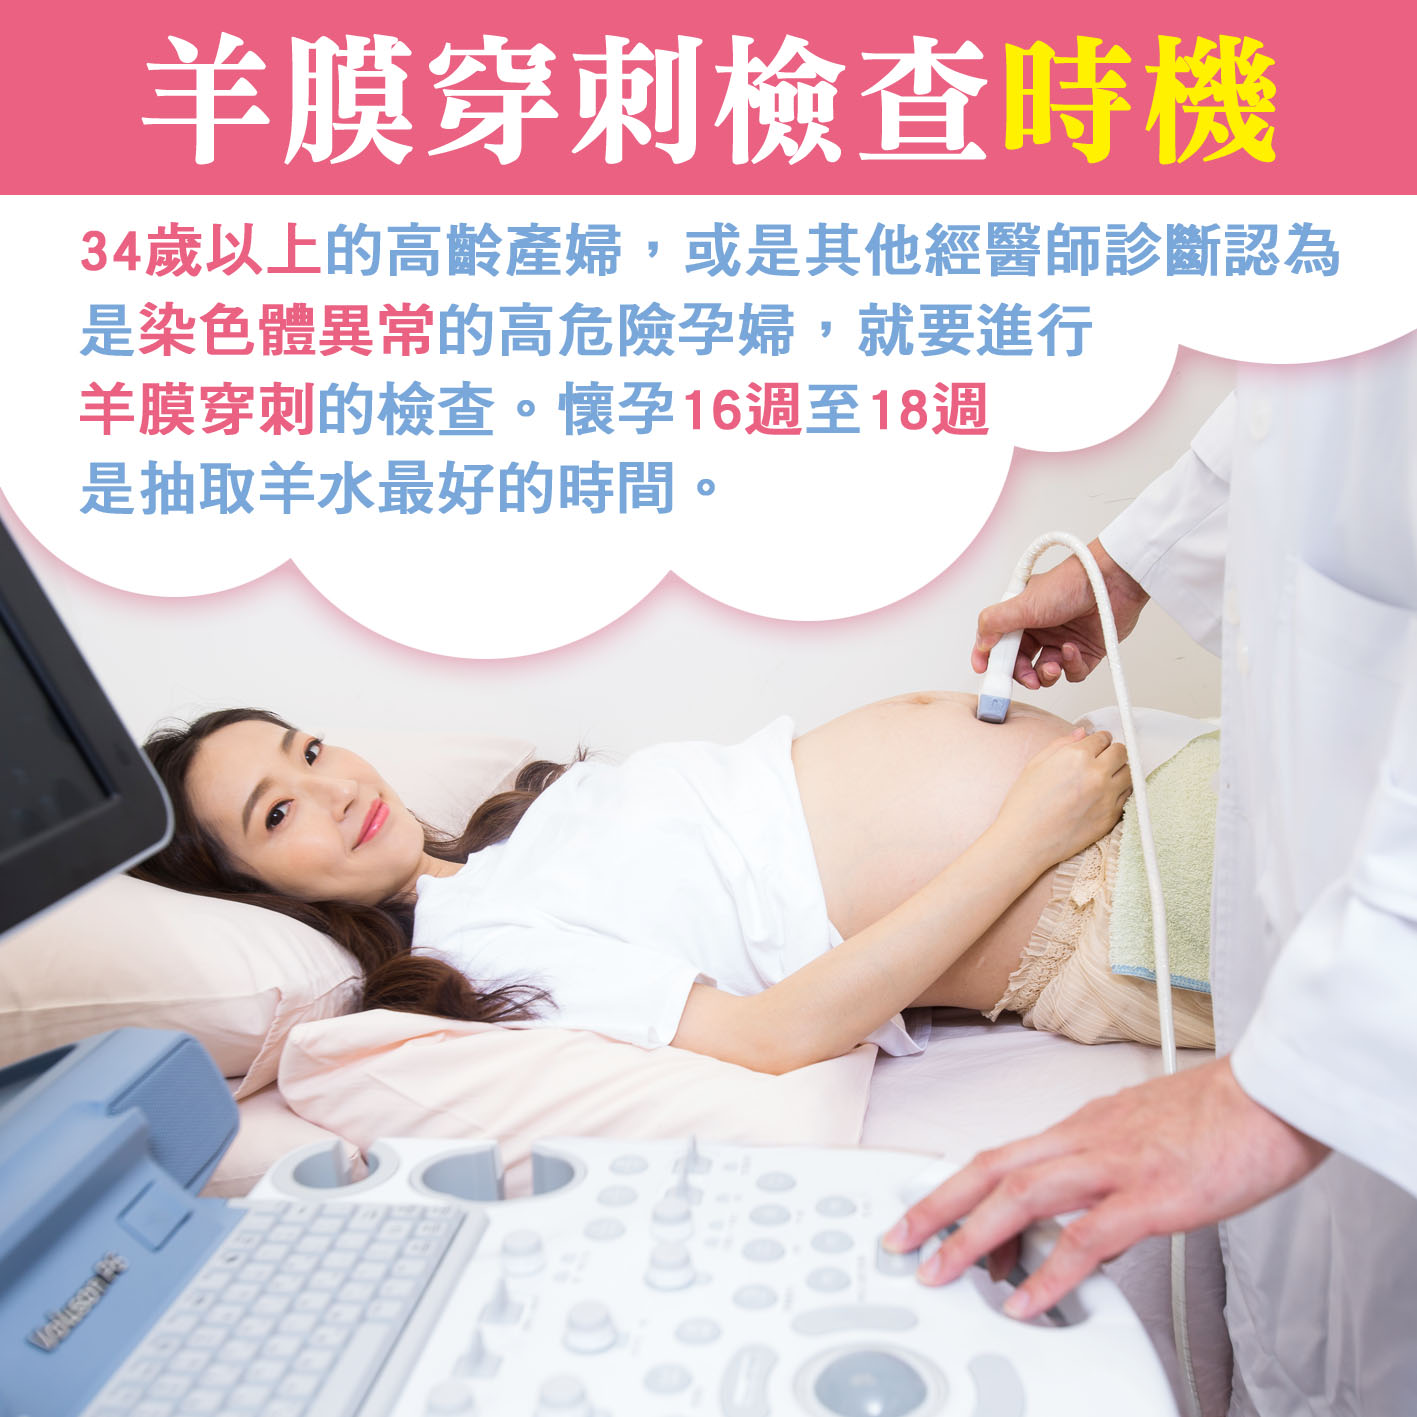 懷孕第17週: 羊膜穿刺檢查時機